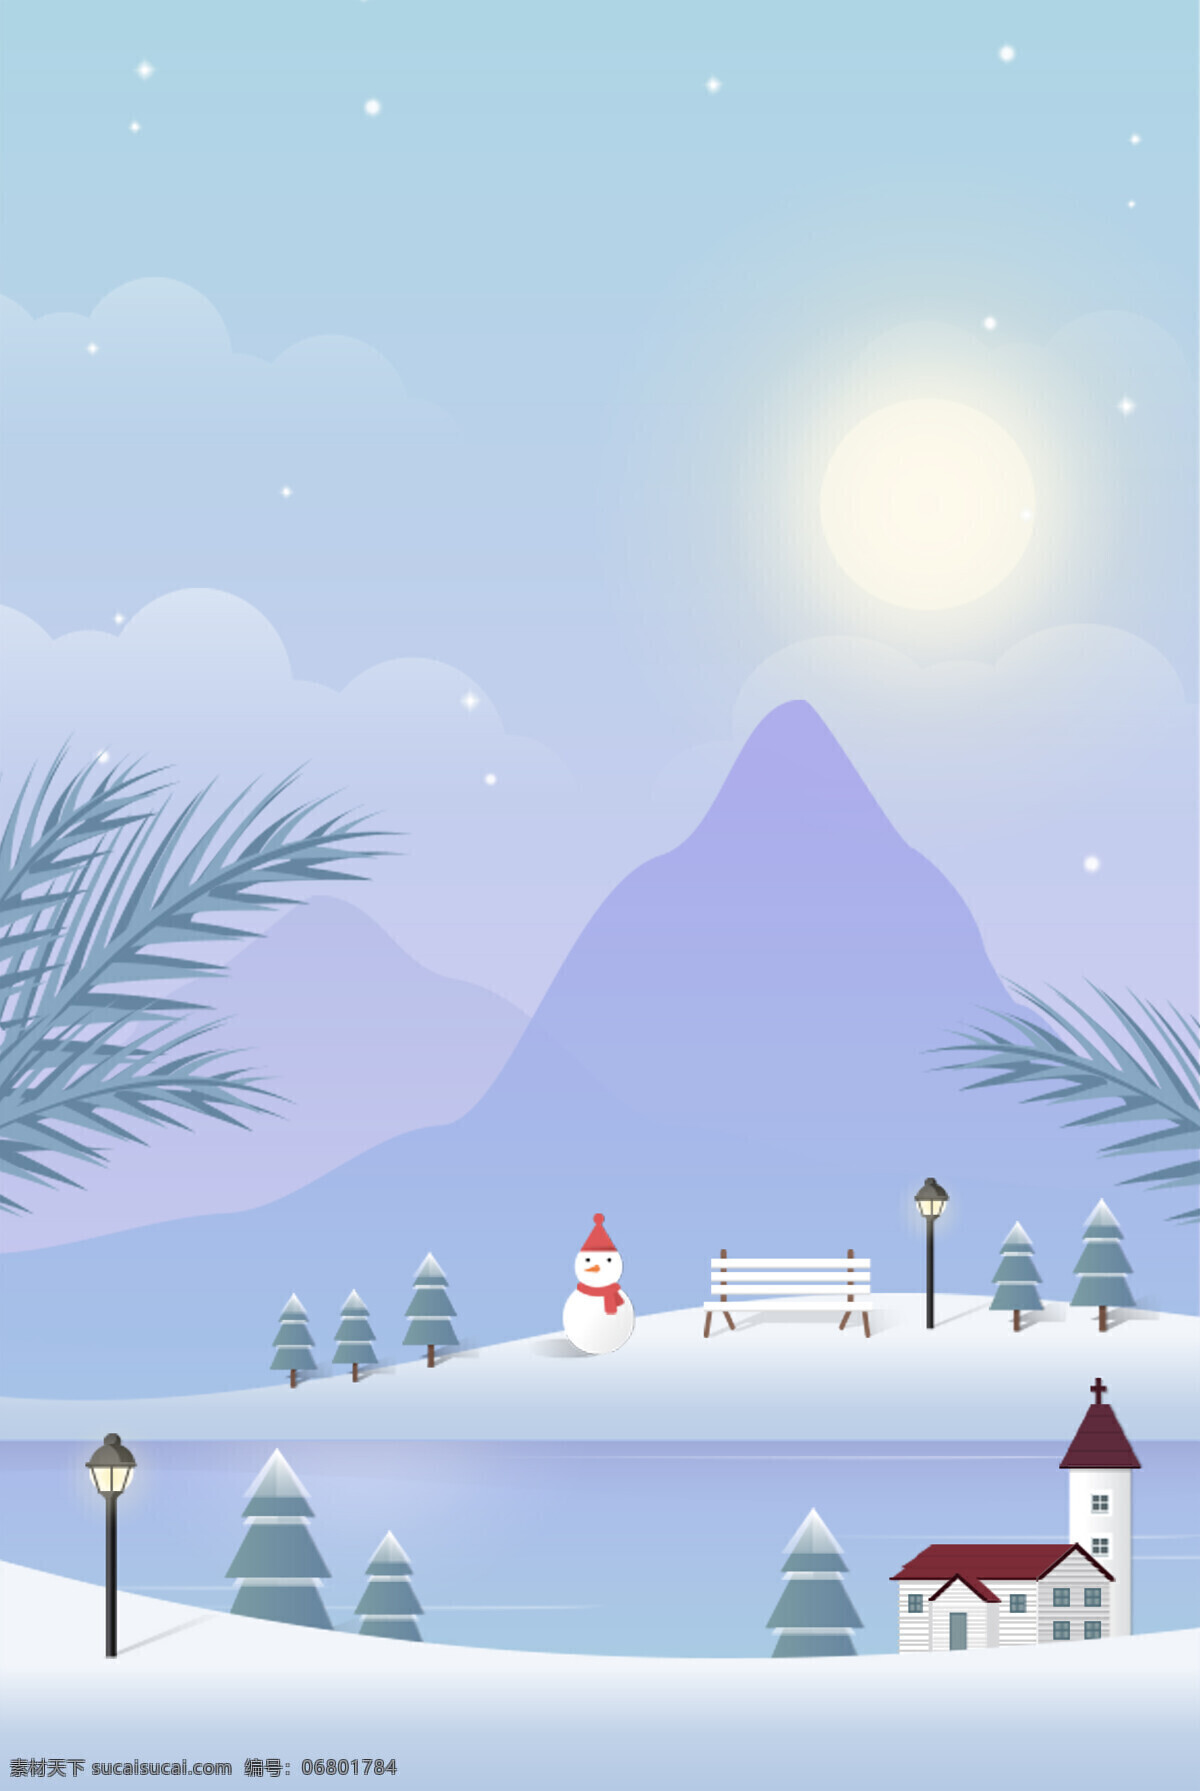 手绘 卡通 冬天 大雪 背景 房子 阳光 蓝色 浪漫 雪人 树枝 远山